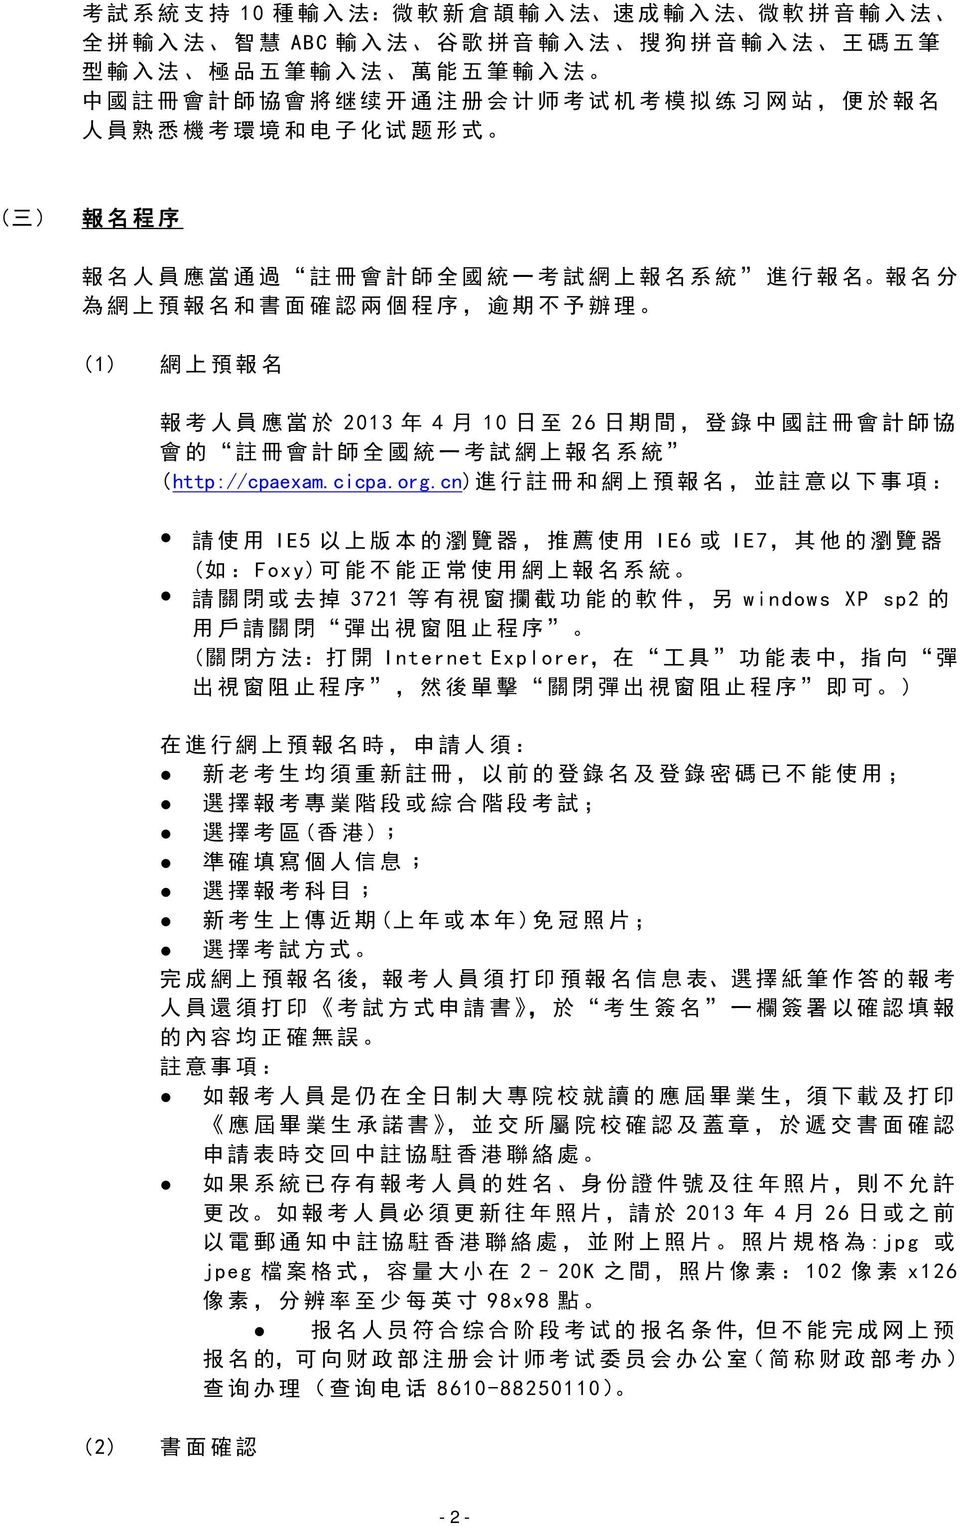 人 員 應 當 於 2013 年 4 月 10 日 至 26 日 期 間, 登 錄 中 國 註 冊 會 計 師 協 會 的 註 冊 會 計 師 全 國 統 一 考 試 網 上 報 名 系 統 (http://cpaexam.cicpa.org.